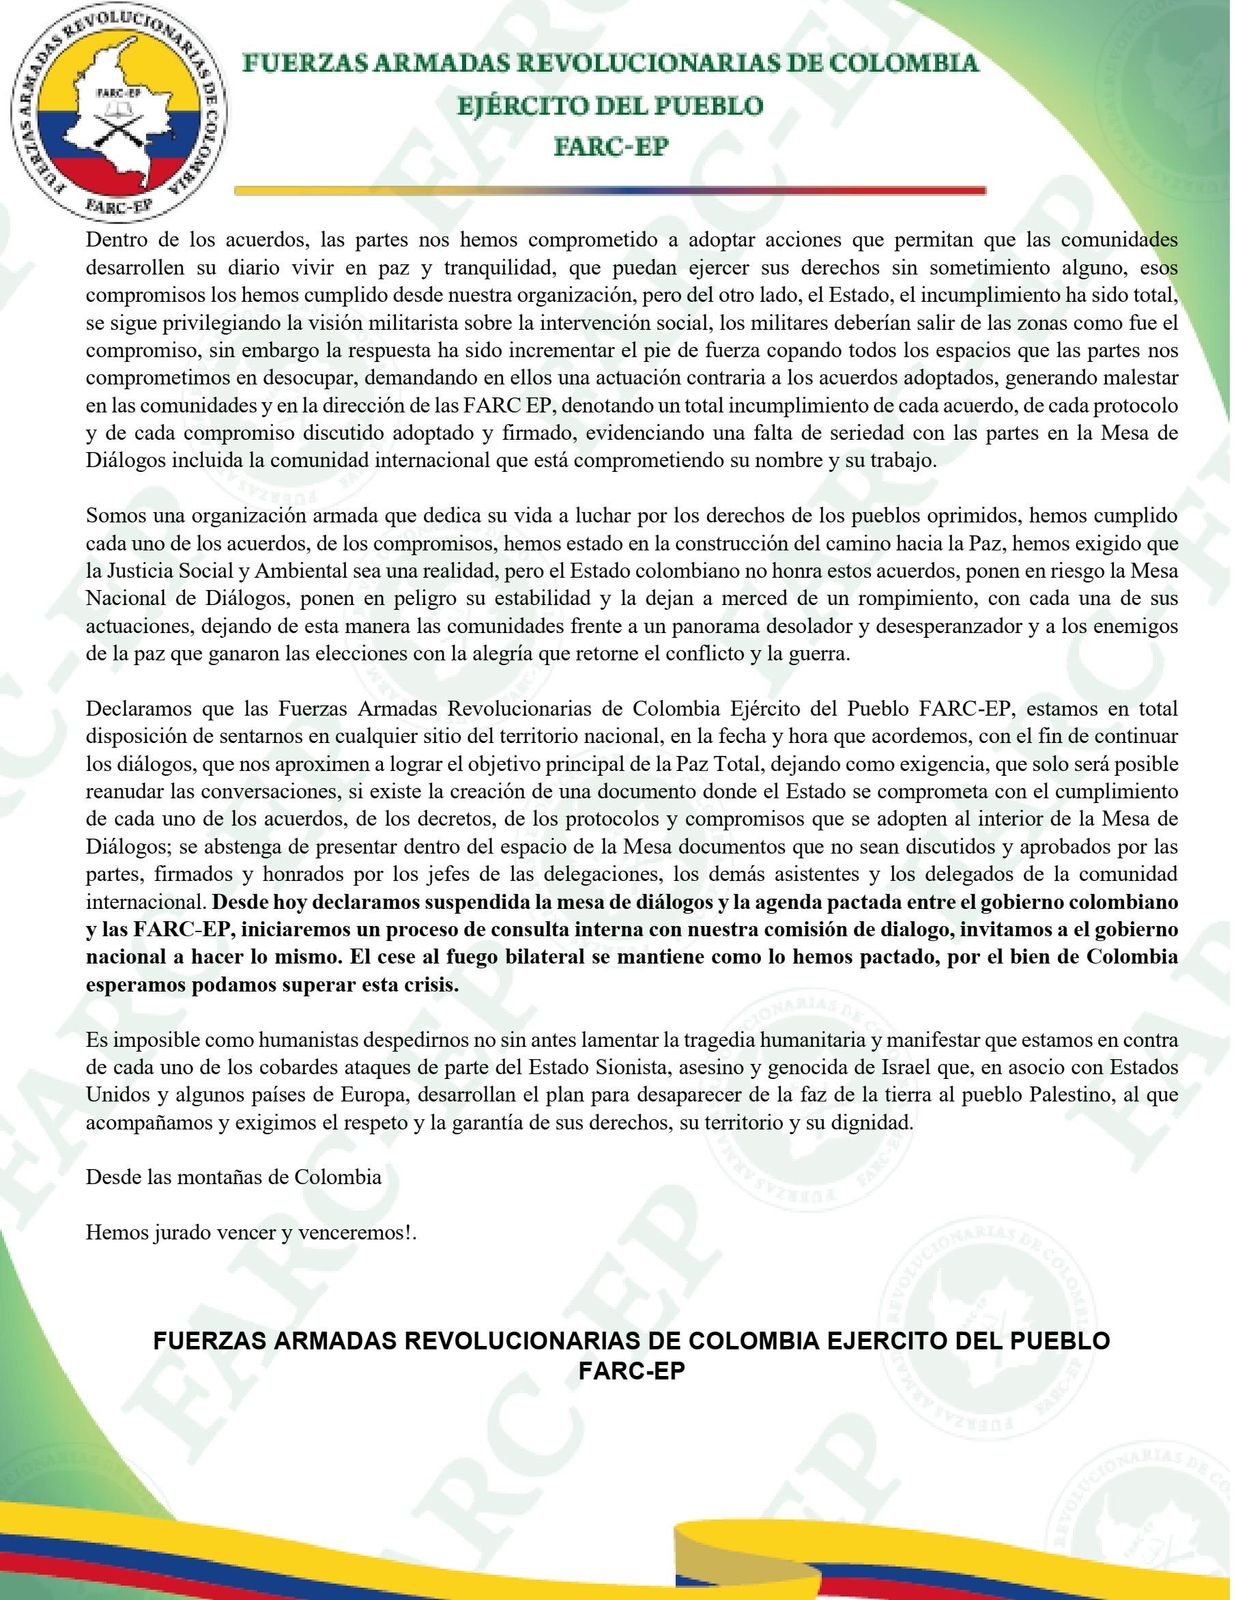 Comunicado emitido por las disidencias de las FARC.